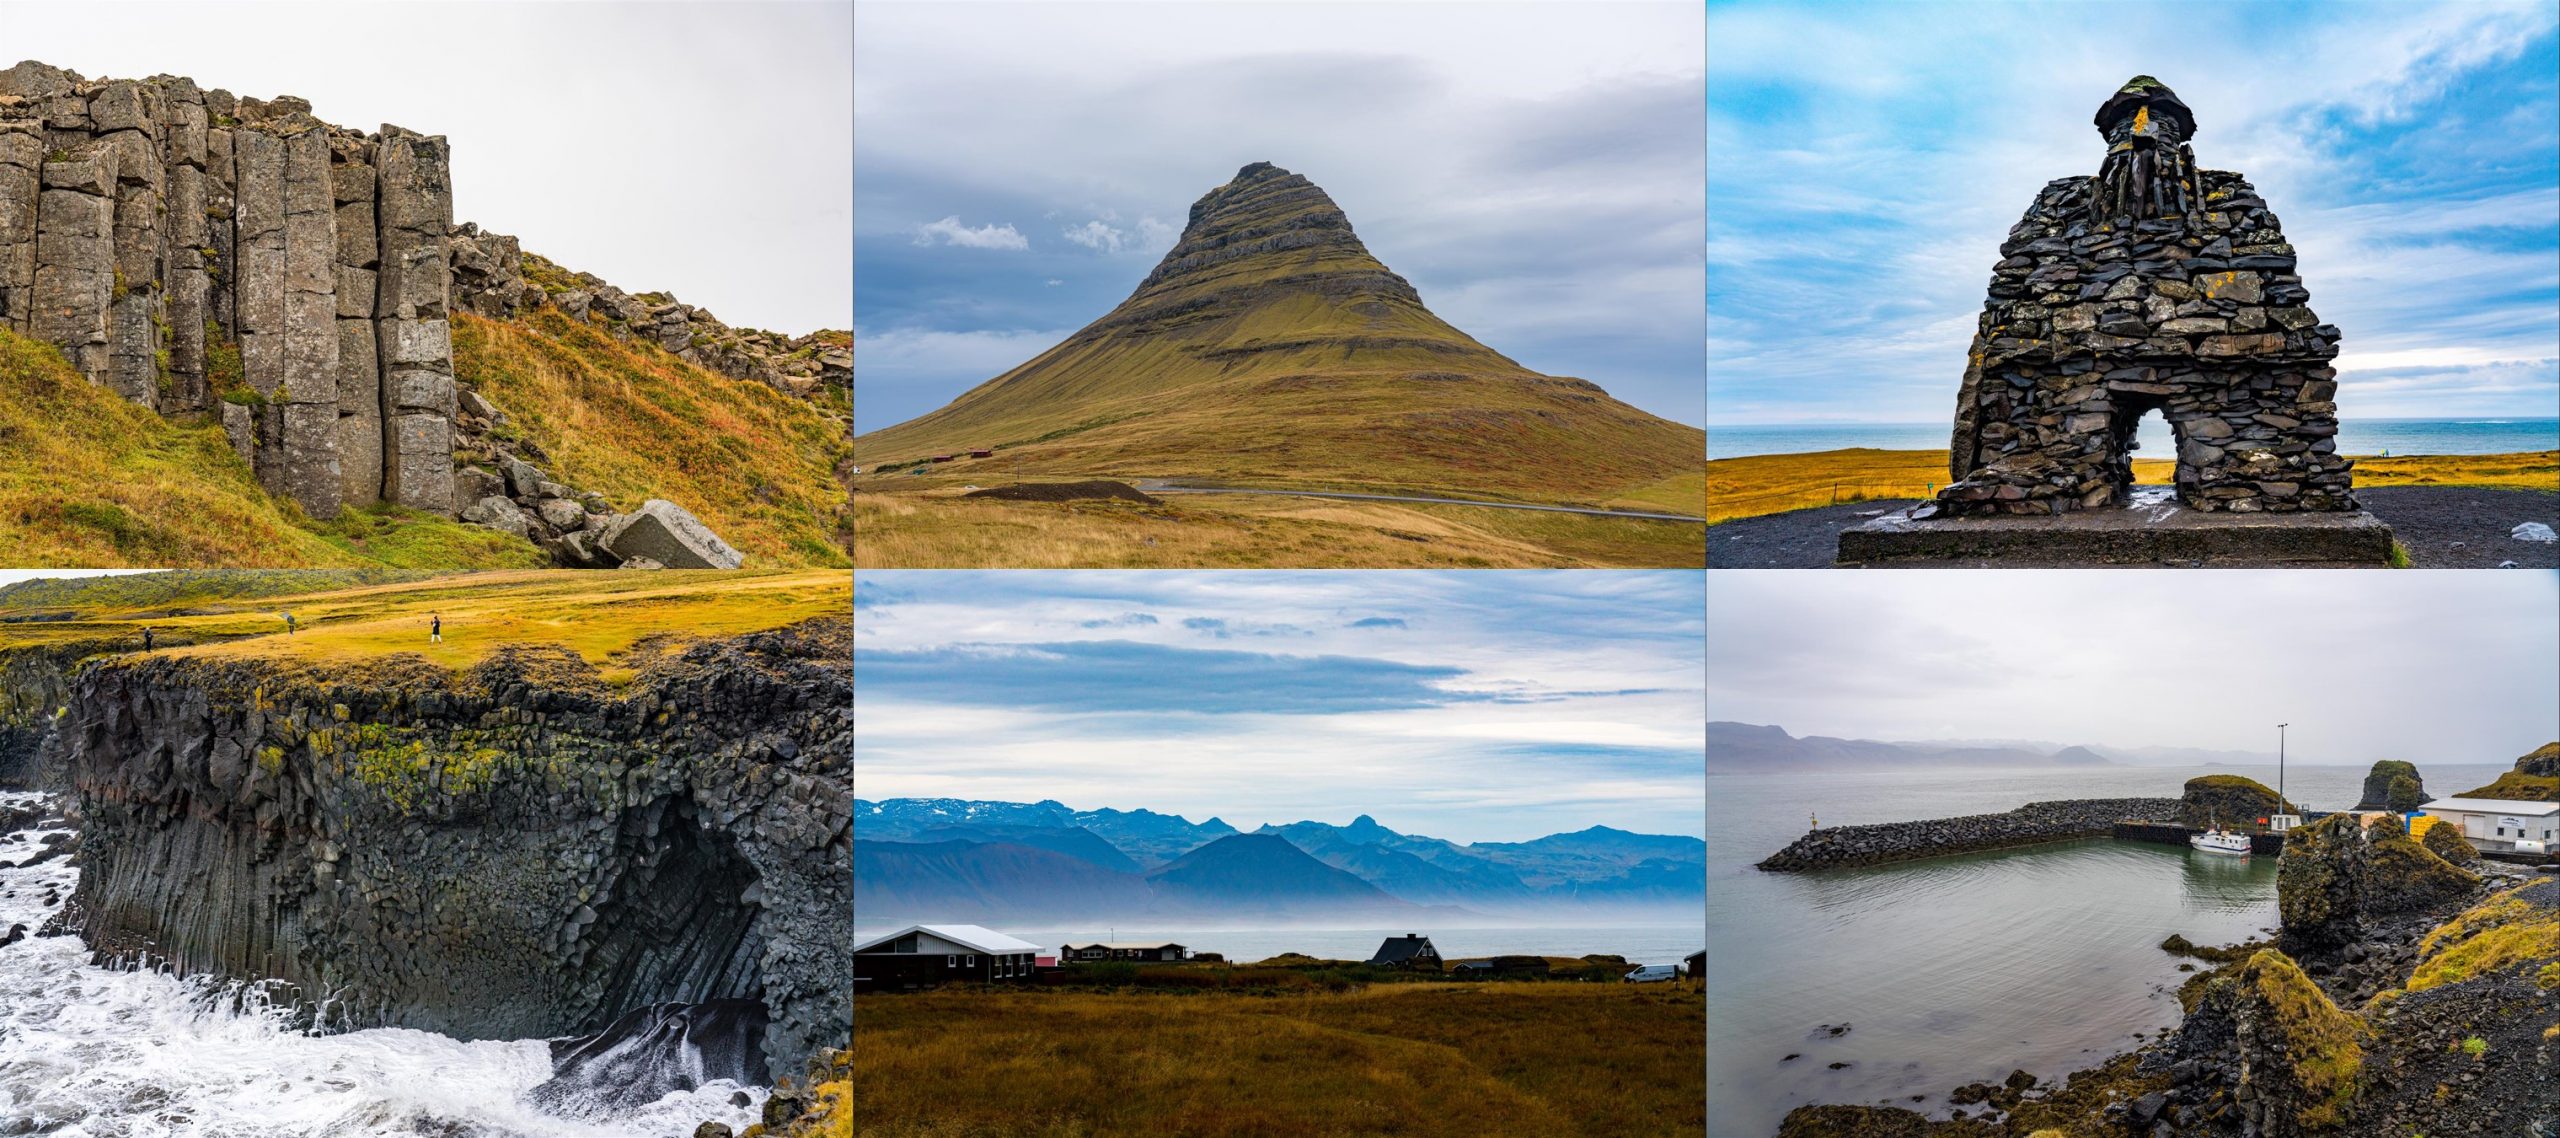 [冰島] 2019 冰島極光自助旅行 - 10 天行程整理、路線、景點參考